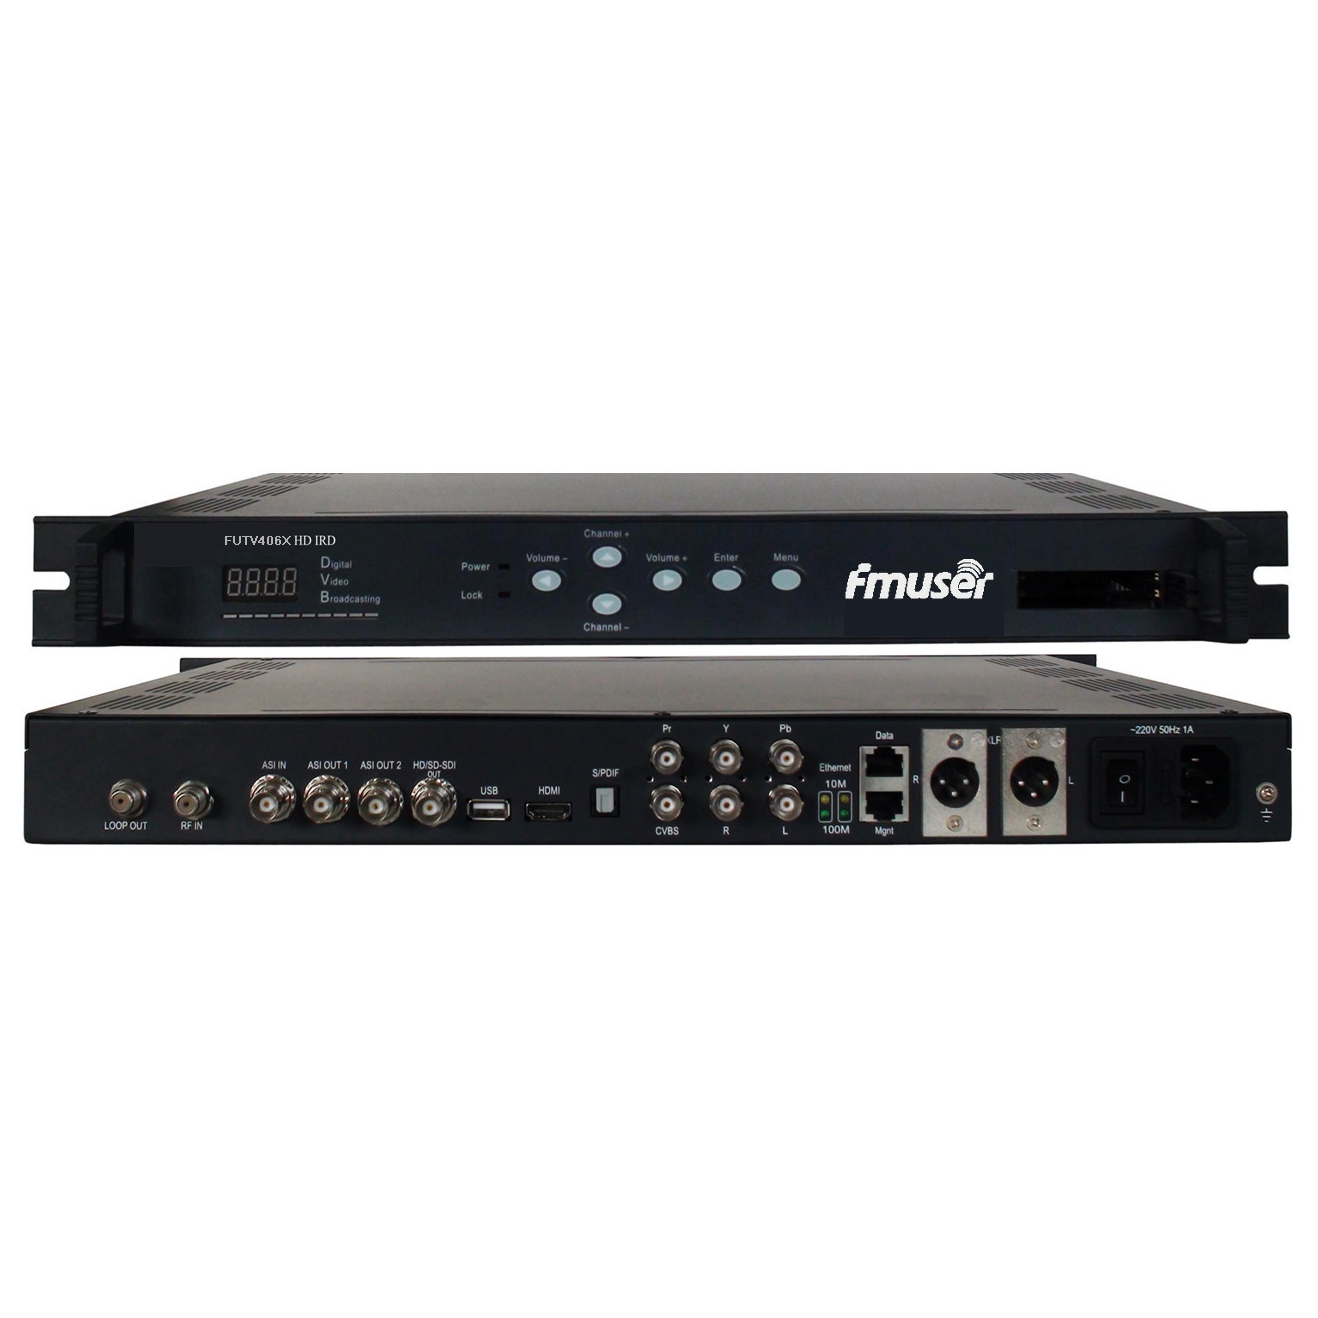 FMUSER FUTV406X HD IRD (1 DVB-S / S2 / T / C, ISDB-T RF Input, 1 ASI IP In, 2 1 ASI IP Output, HDMI SDI CVBS XLR Out) sa MUX & BISS